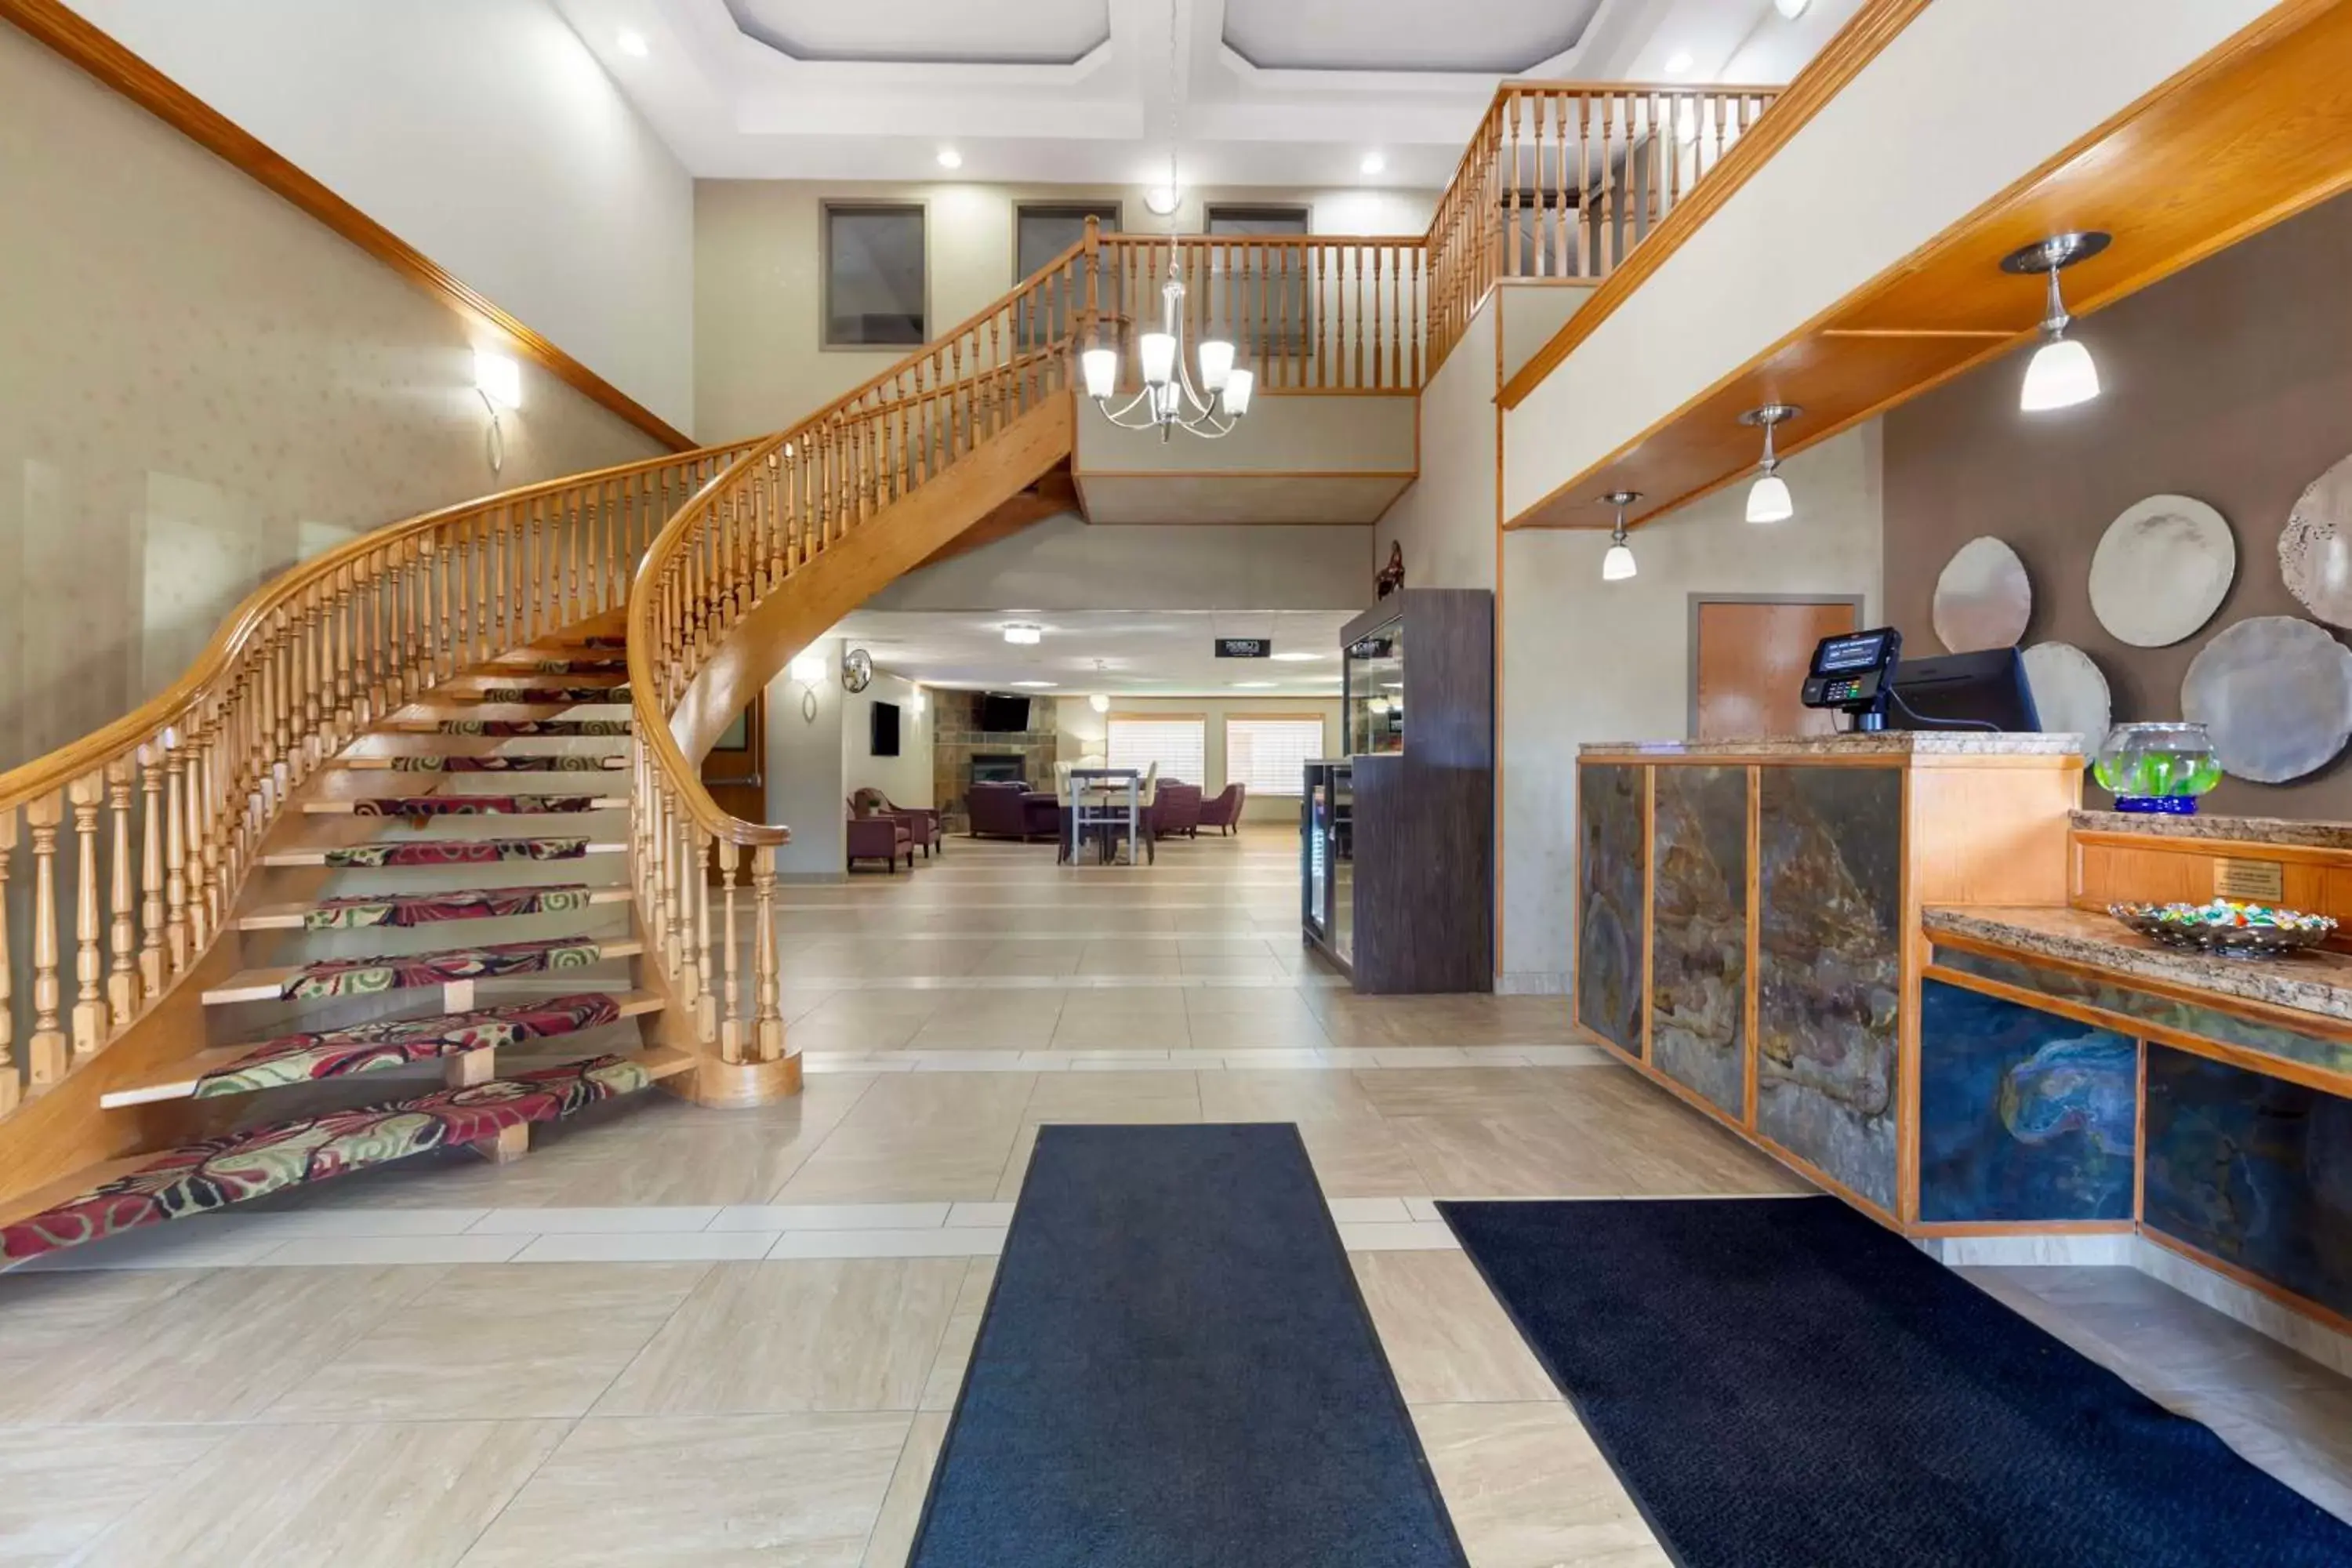 Lobby or reception, Lobby/Reception in Best Western Grande Prairie